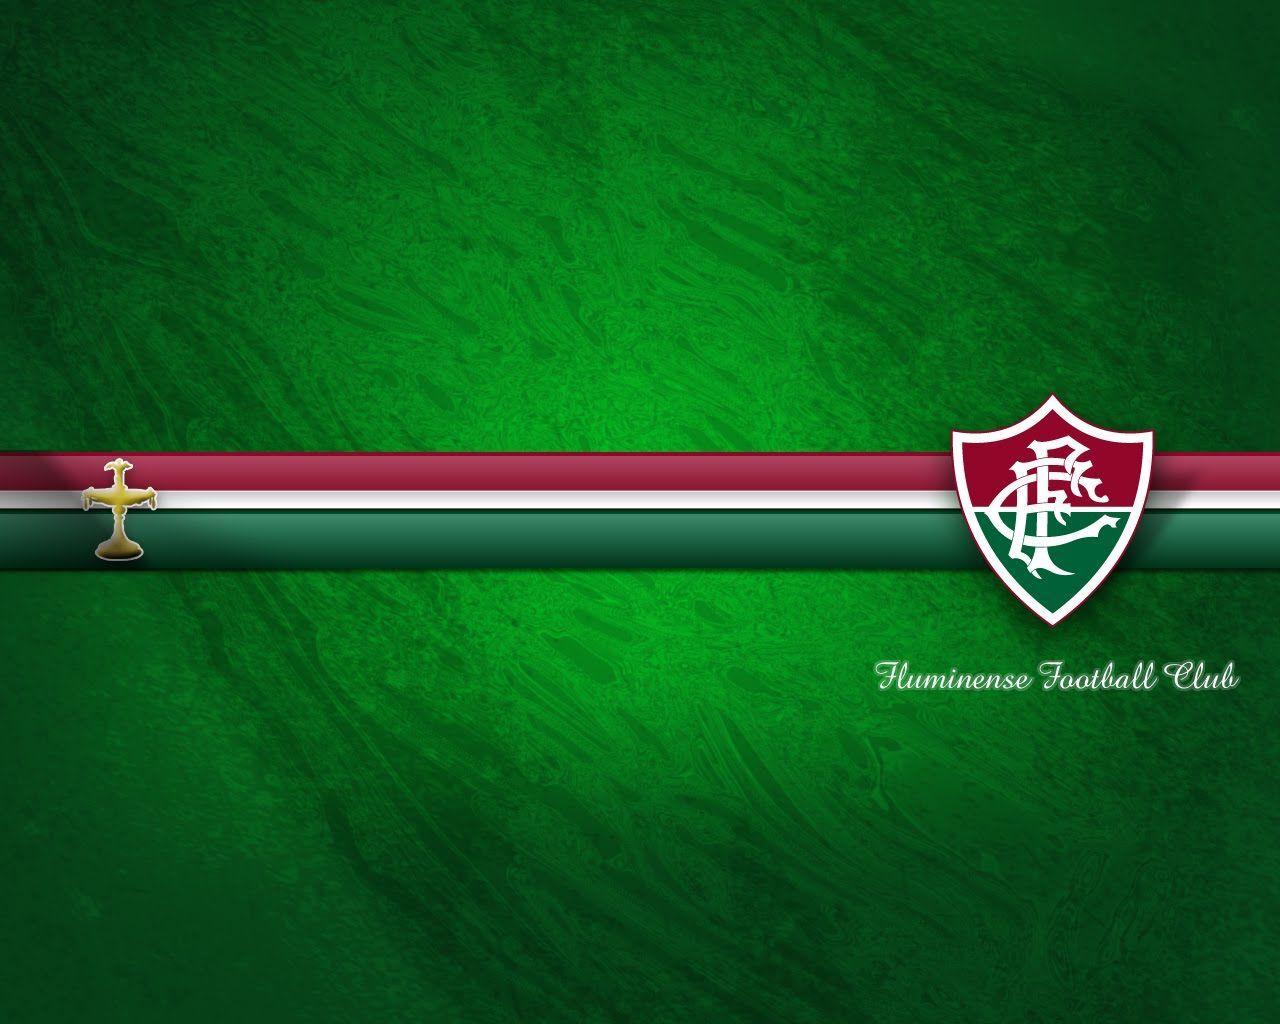 Fluminense Football Wallpaper